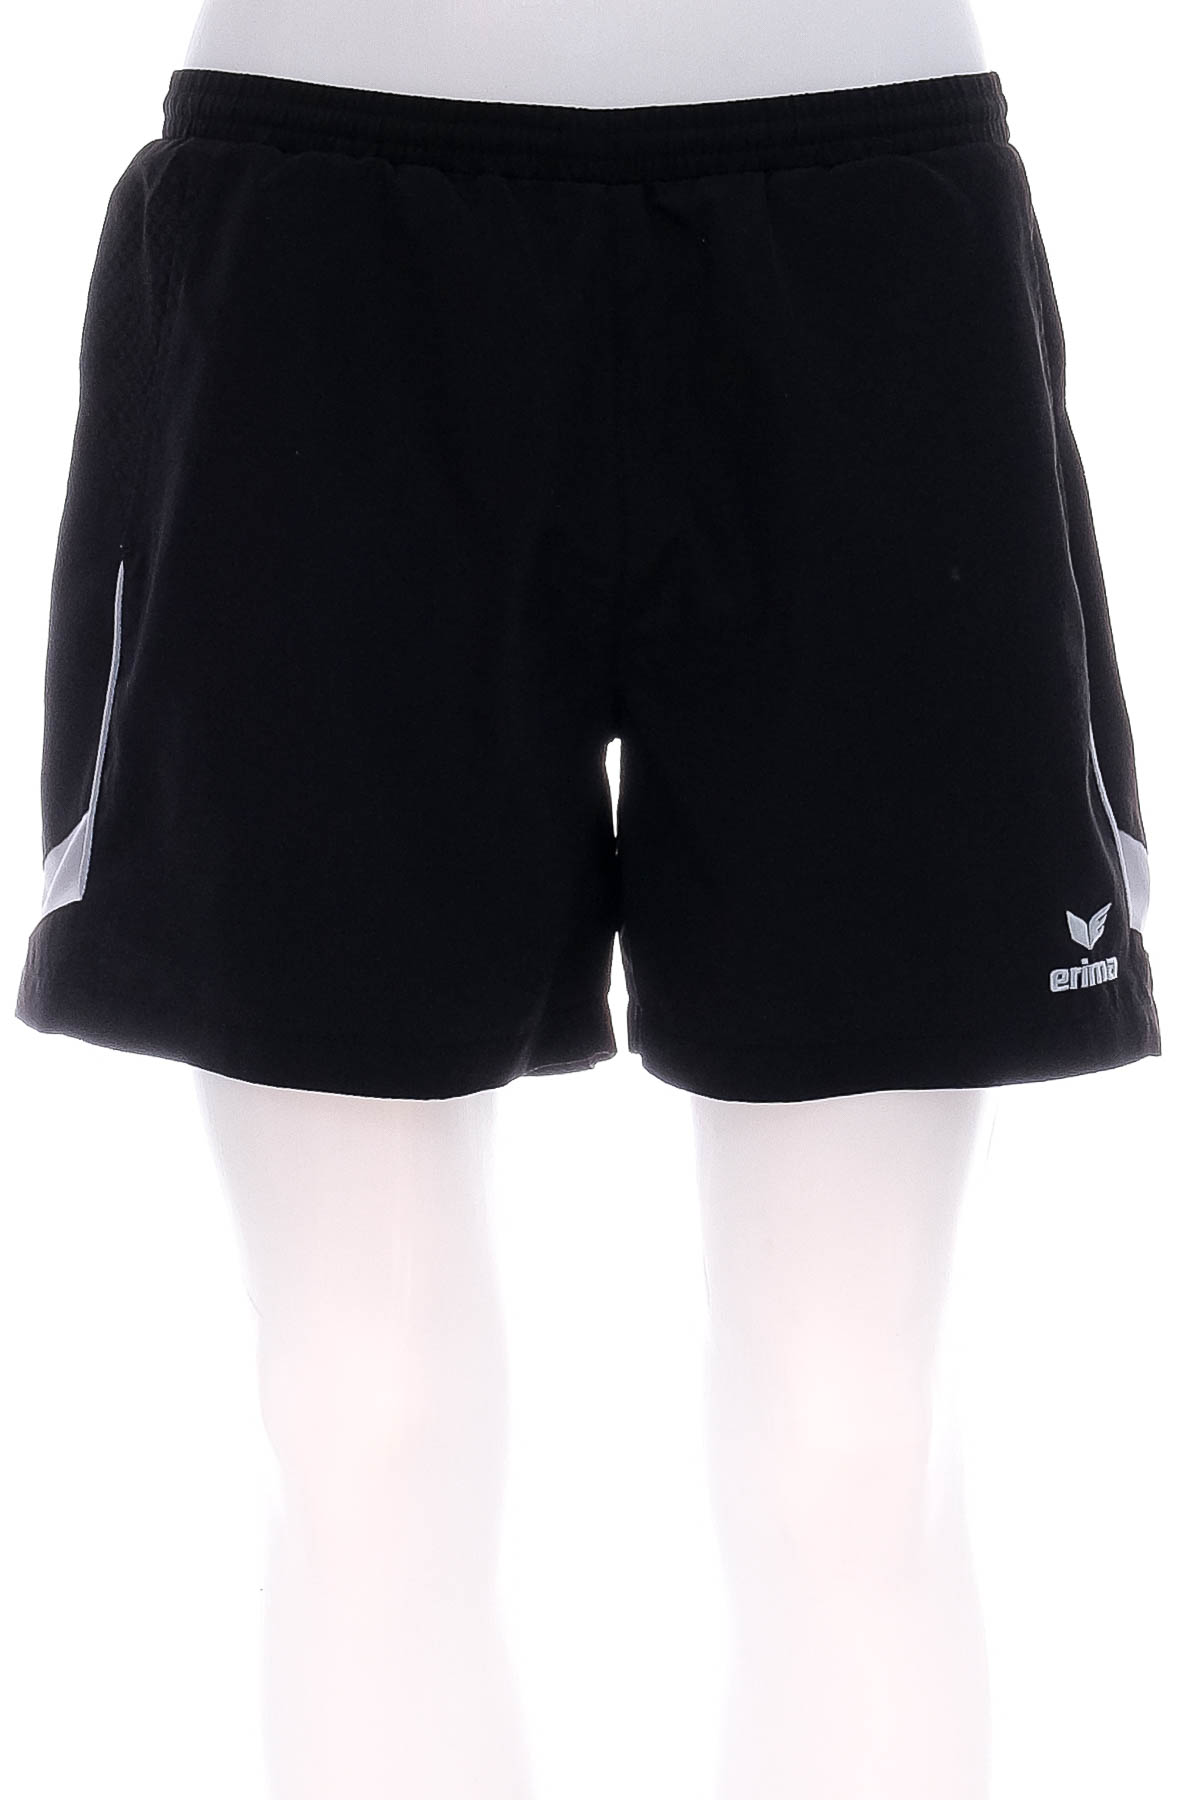 Men's shorts - Erima - 0